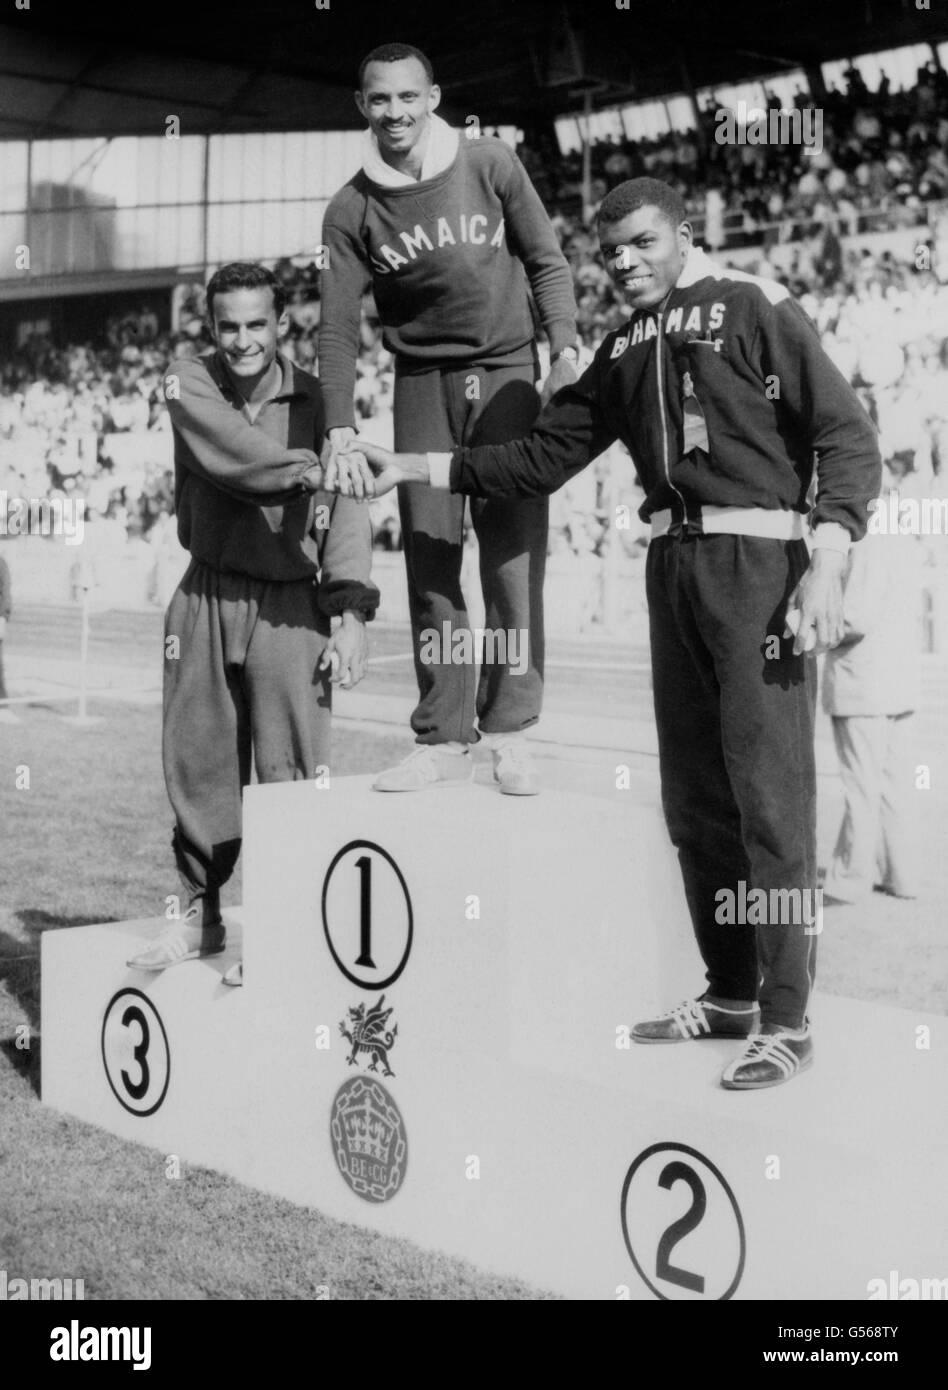 Jamaikas Keith Gardner (c) auf dem Podium, bereit, eine Goldmedaille für den Sieg im 100-Meter-Finale der Männer in einer Rekordzeit von 9.79 zu erhalten. Tom Robinson von den Bahamas (rechts) wurde Zweiter, Mike Agostini aus Kanada (links) wurde Dritter. Stockfoto